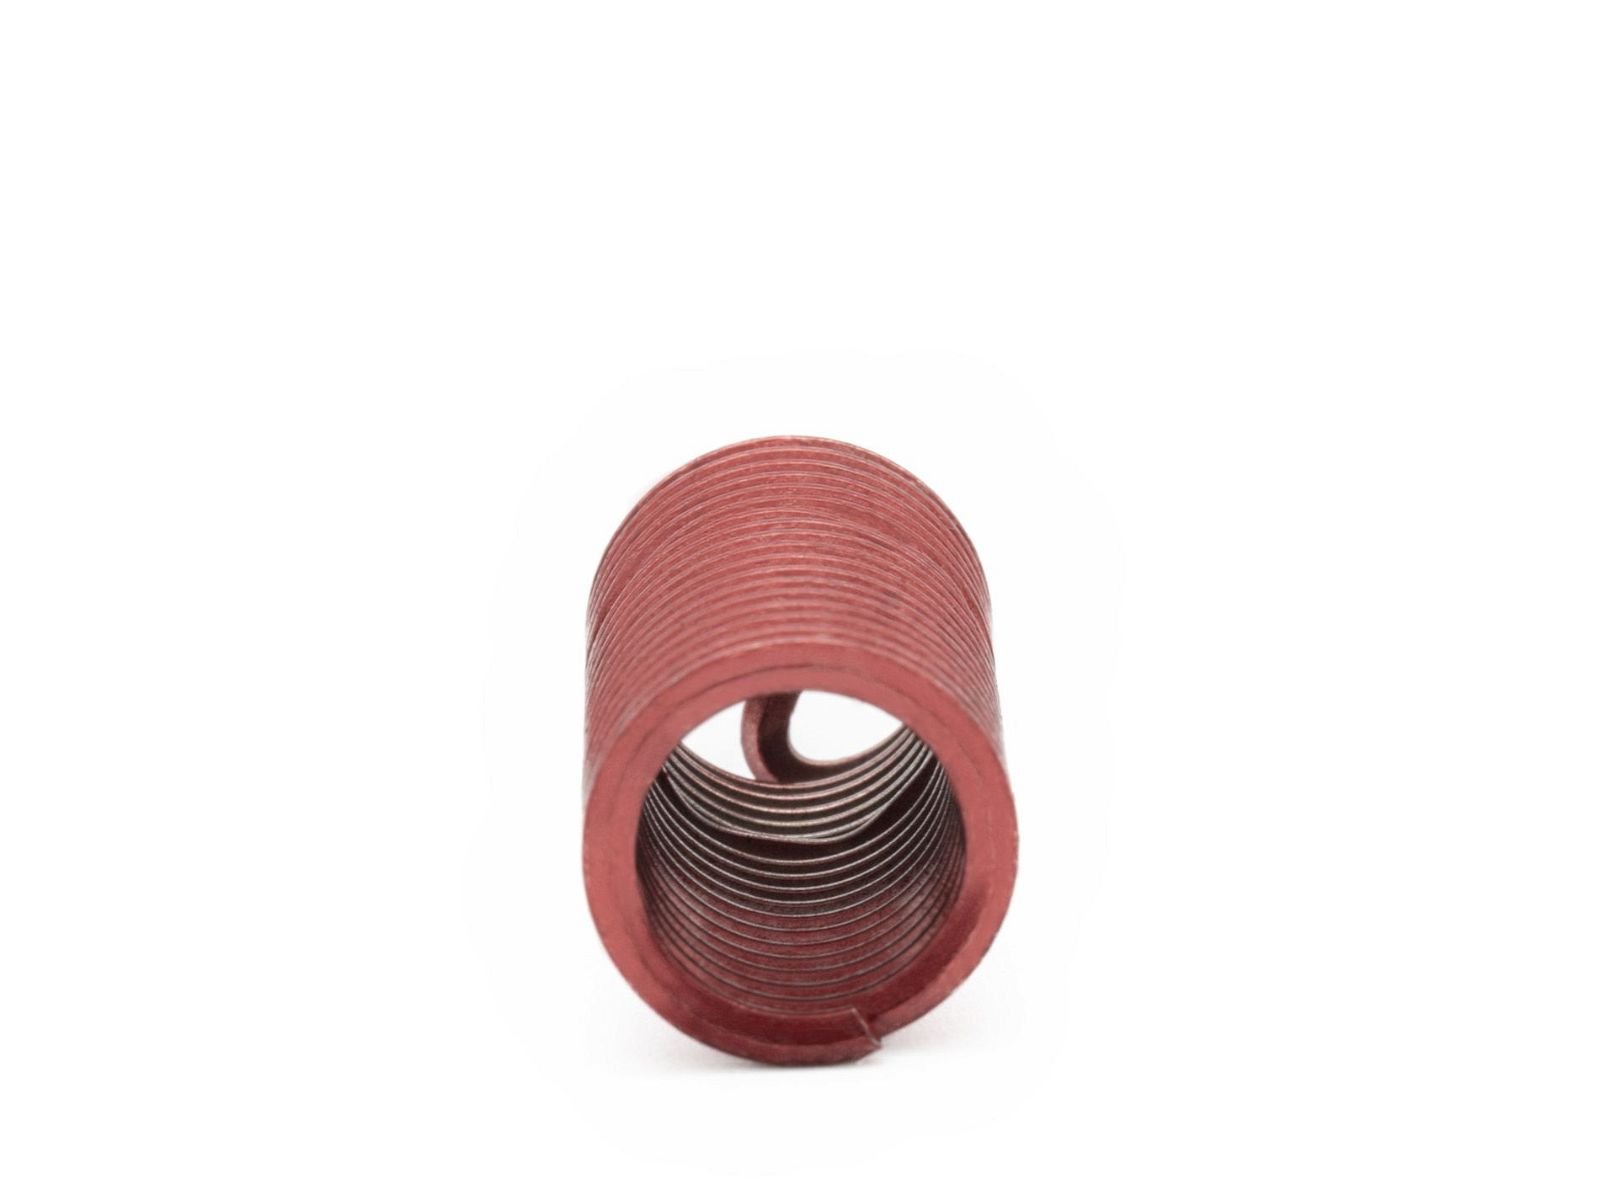 BaerCoil Wire Thread Inserts M 7 x 1.0 - 3.0 D (21 mm) - screw grip (screw locking) - 10 pcs.